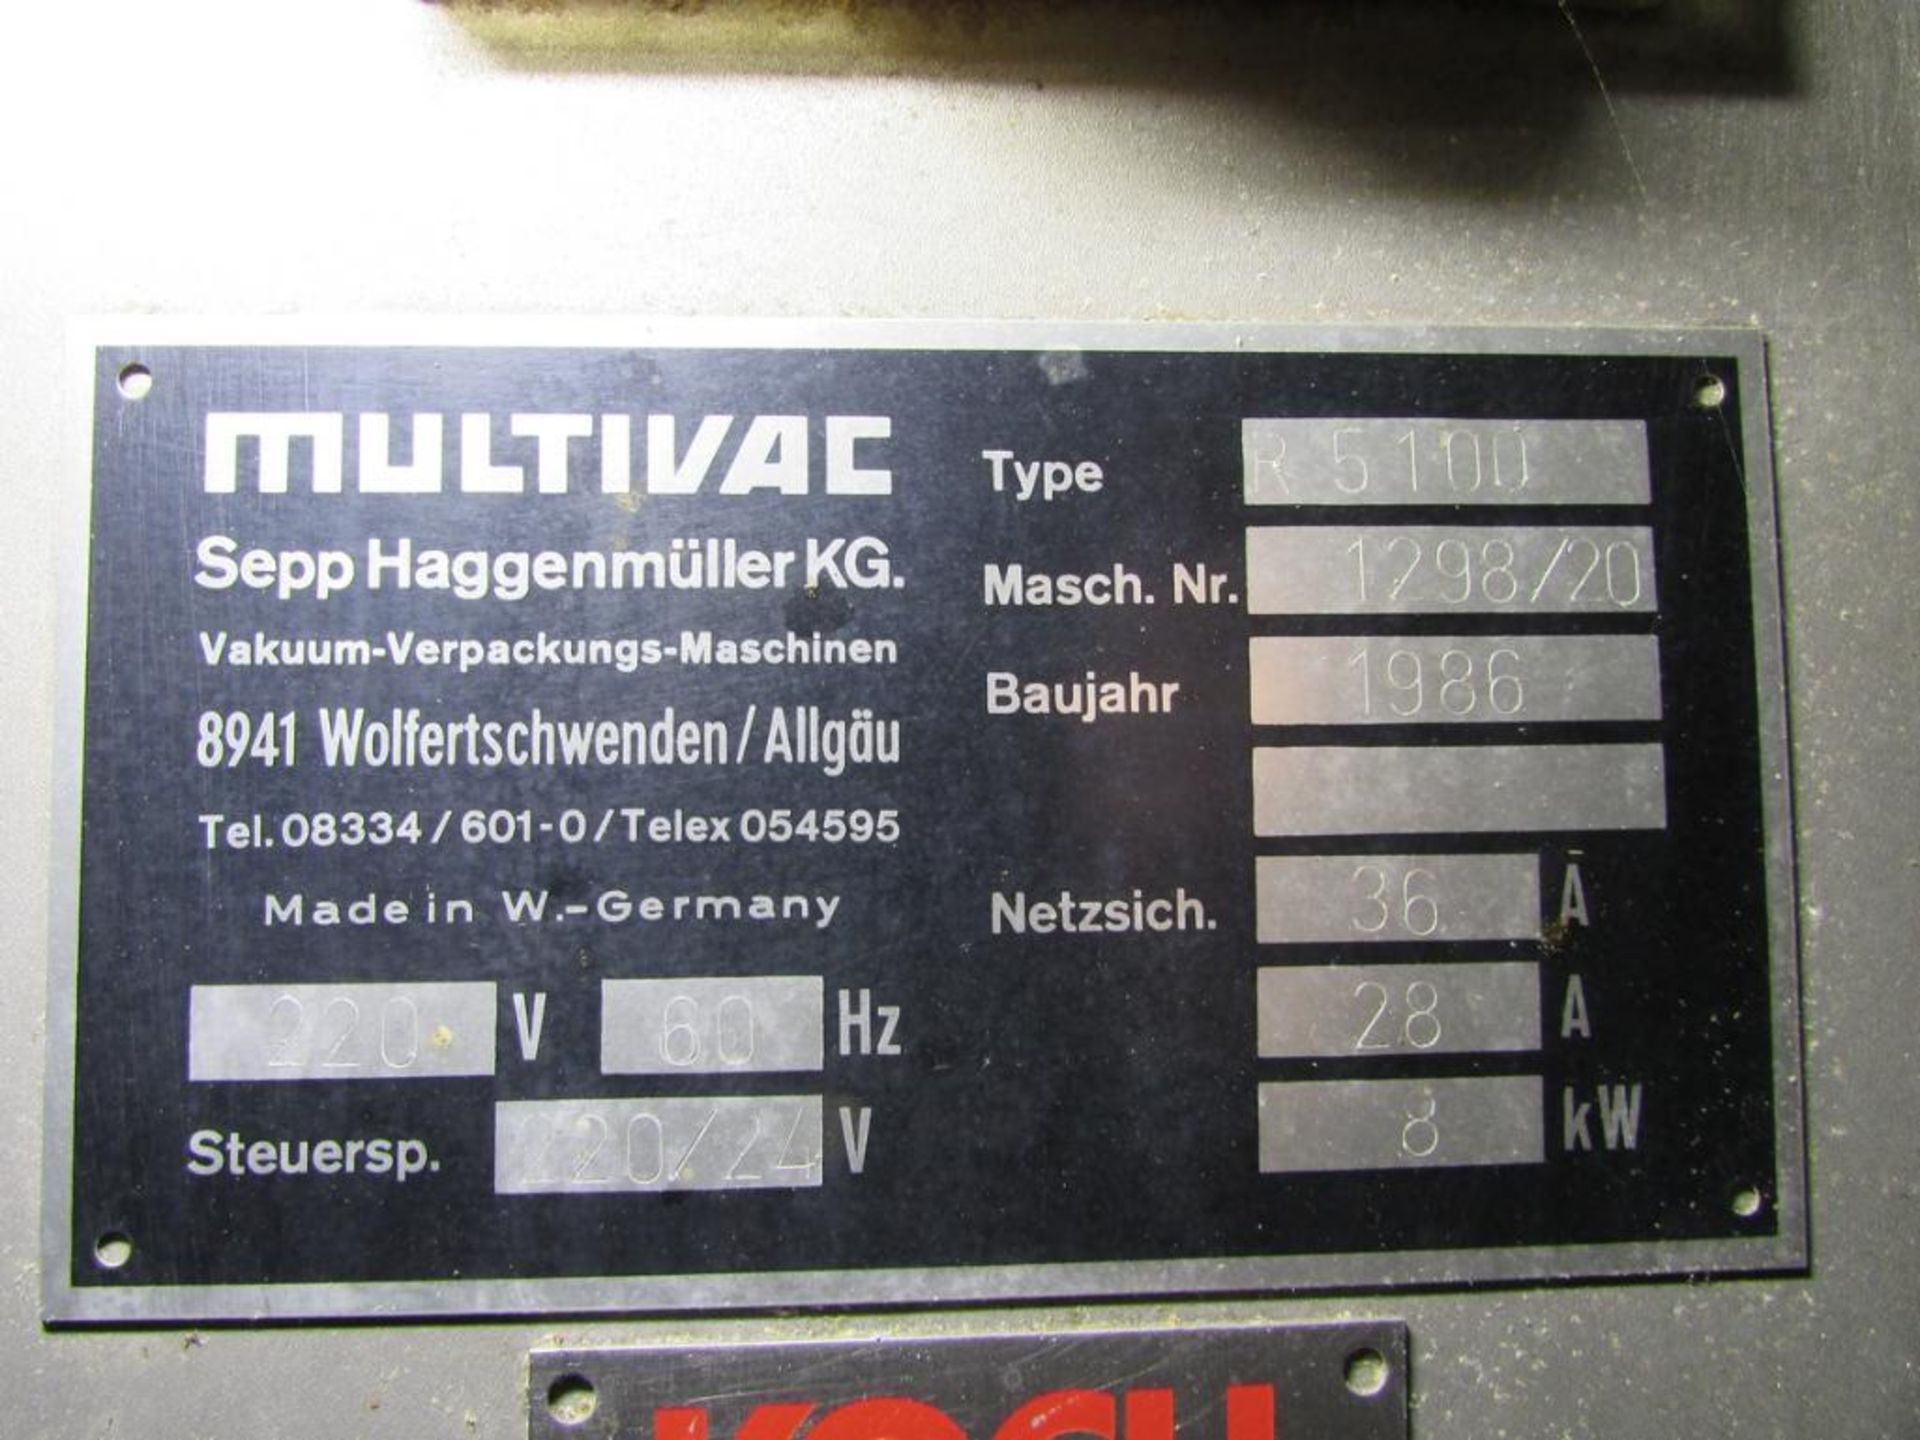 1986 Multivac R5100 Vacuum Sealer, 15" Film, with 12" Diameter Dies, Trimming Station with Film Trim - Image 13 of 13